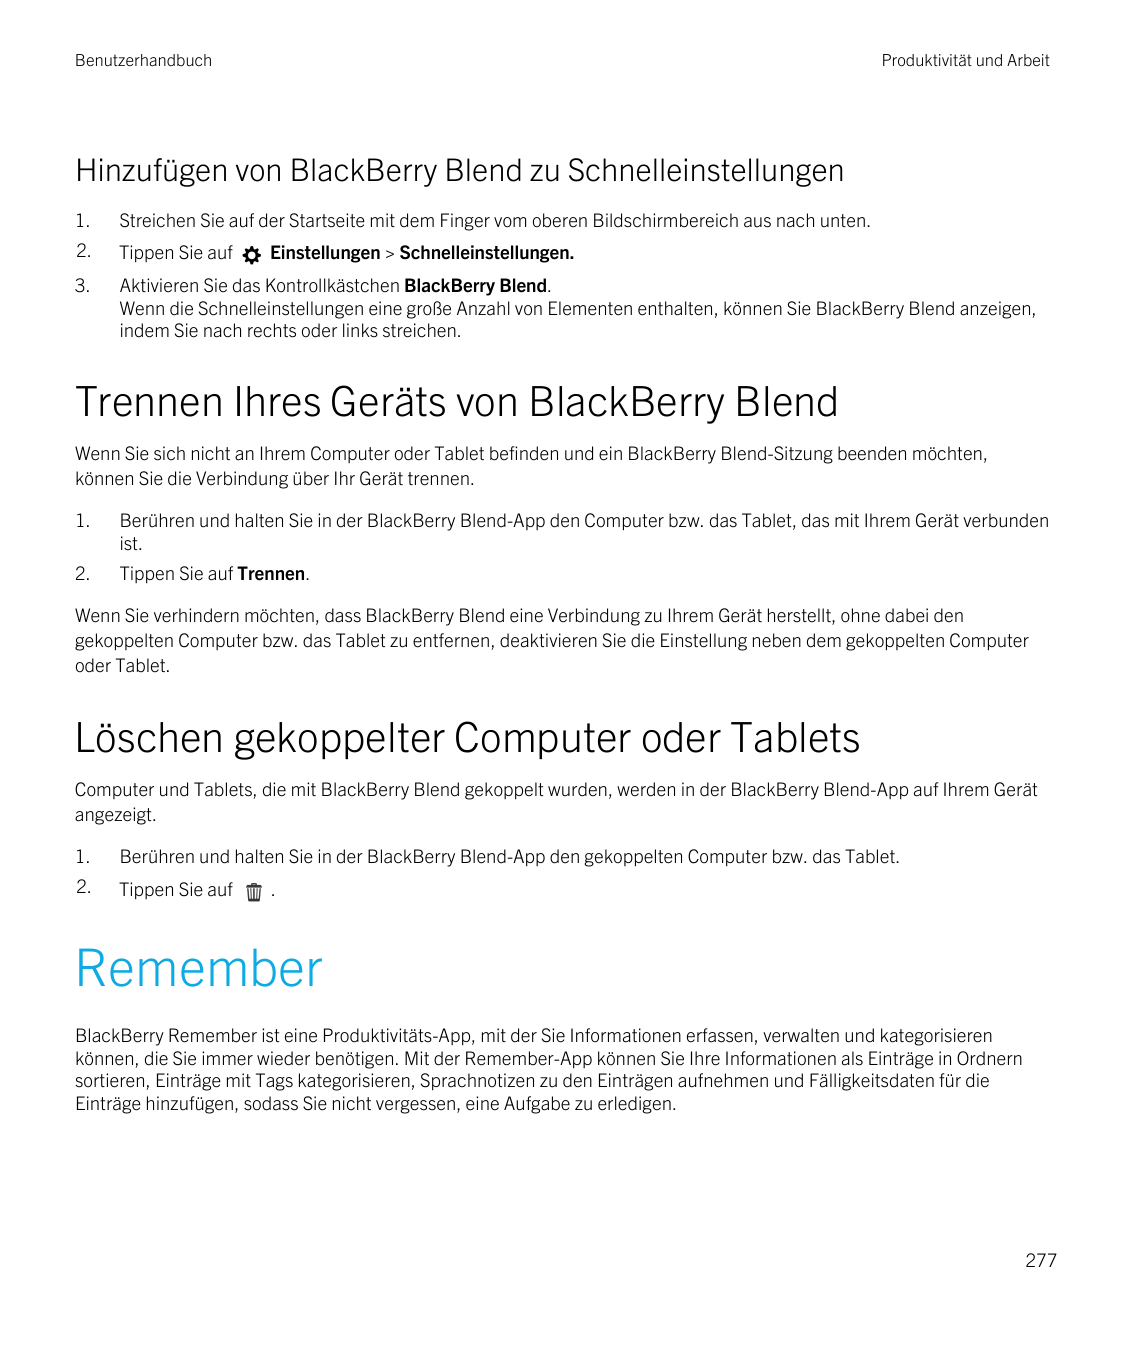 BenutzerhandbuchProduktivität und ArbeitHinzufügen von BlackBerry Blend zu Schnelleinstellungen1.Streichen Sie auf der Startseit